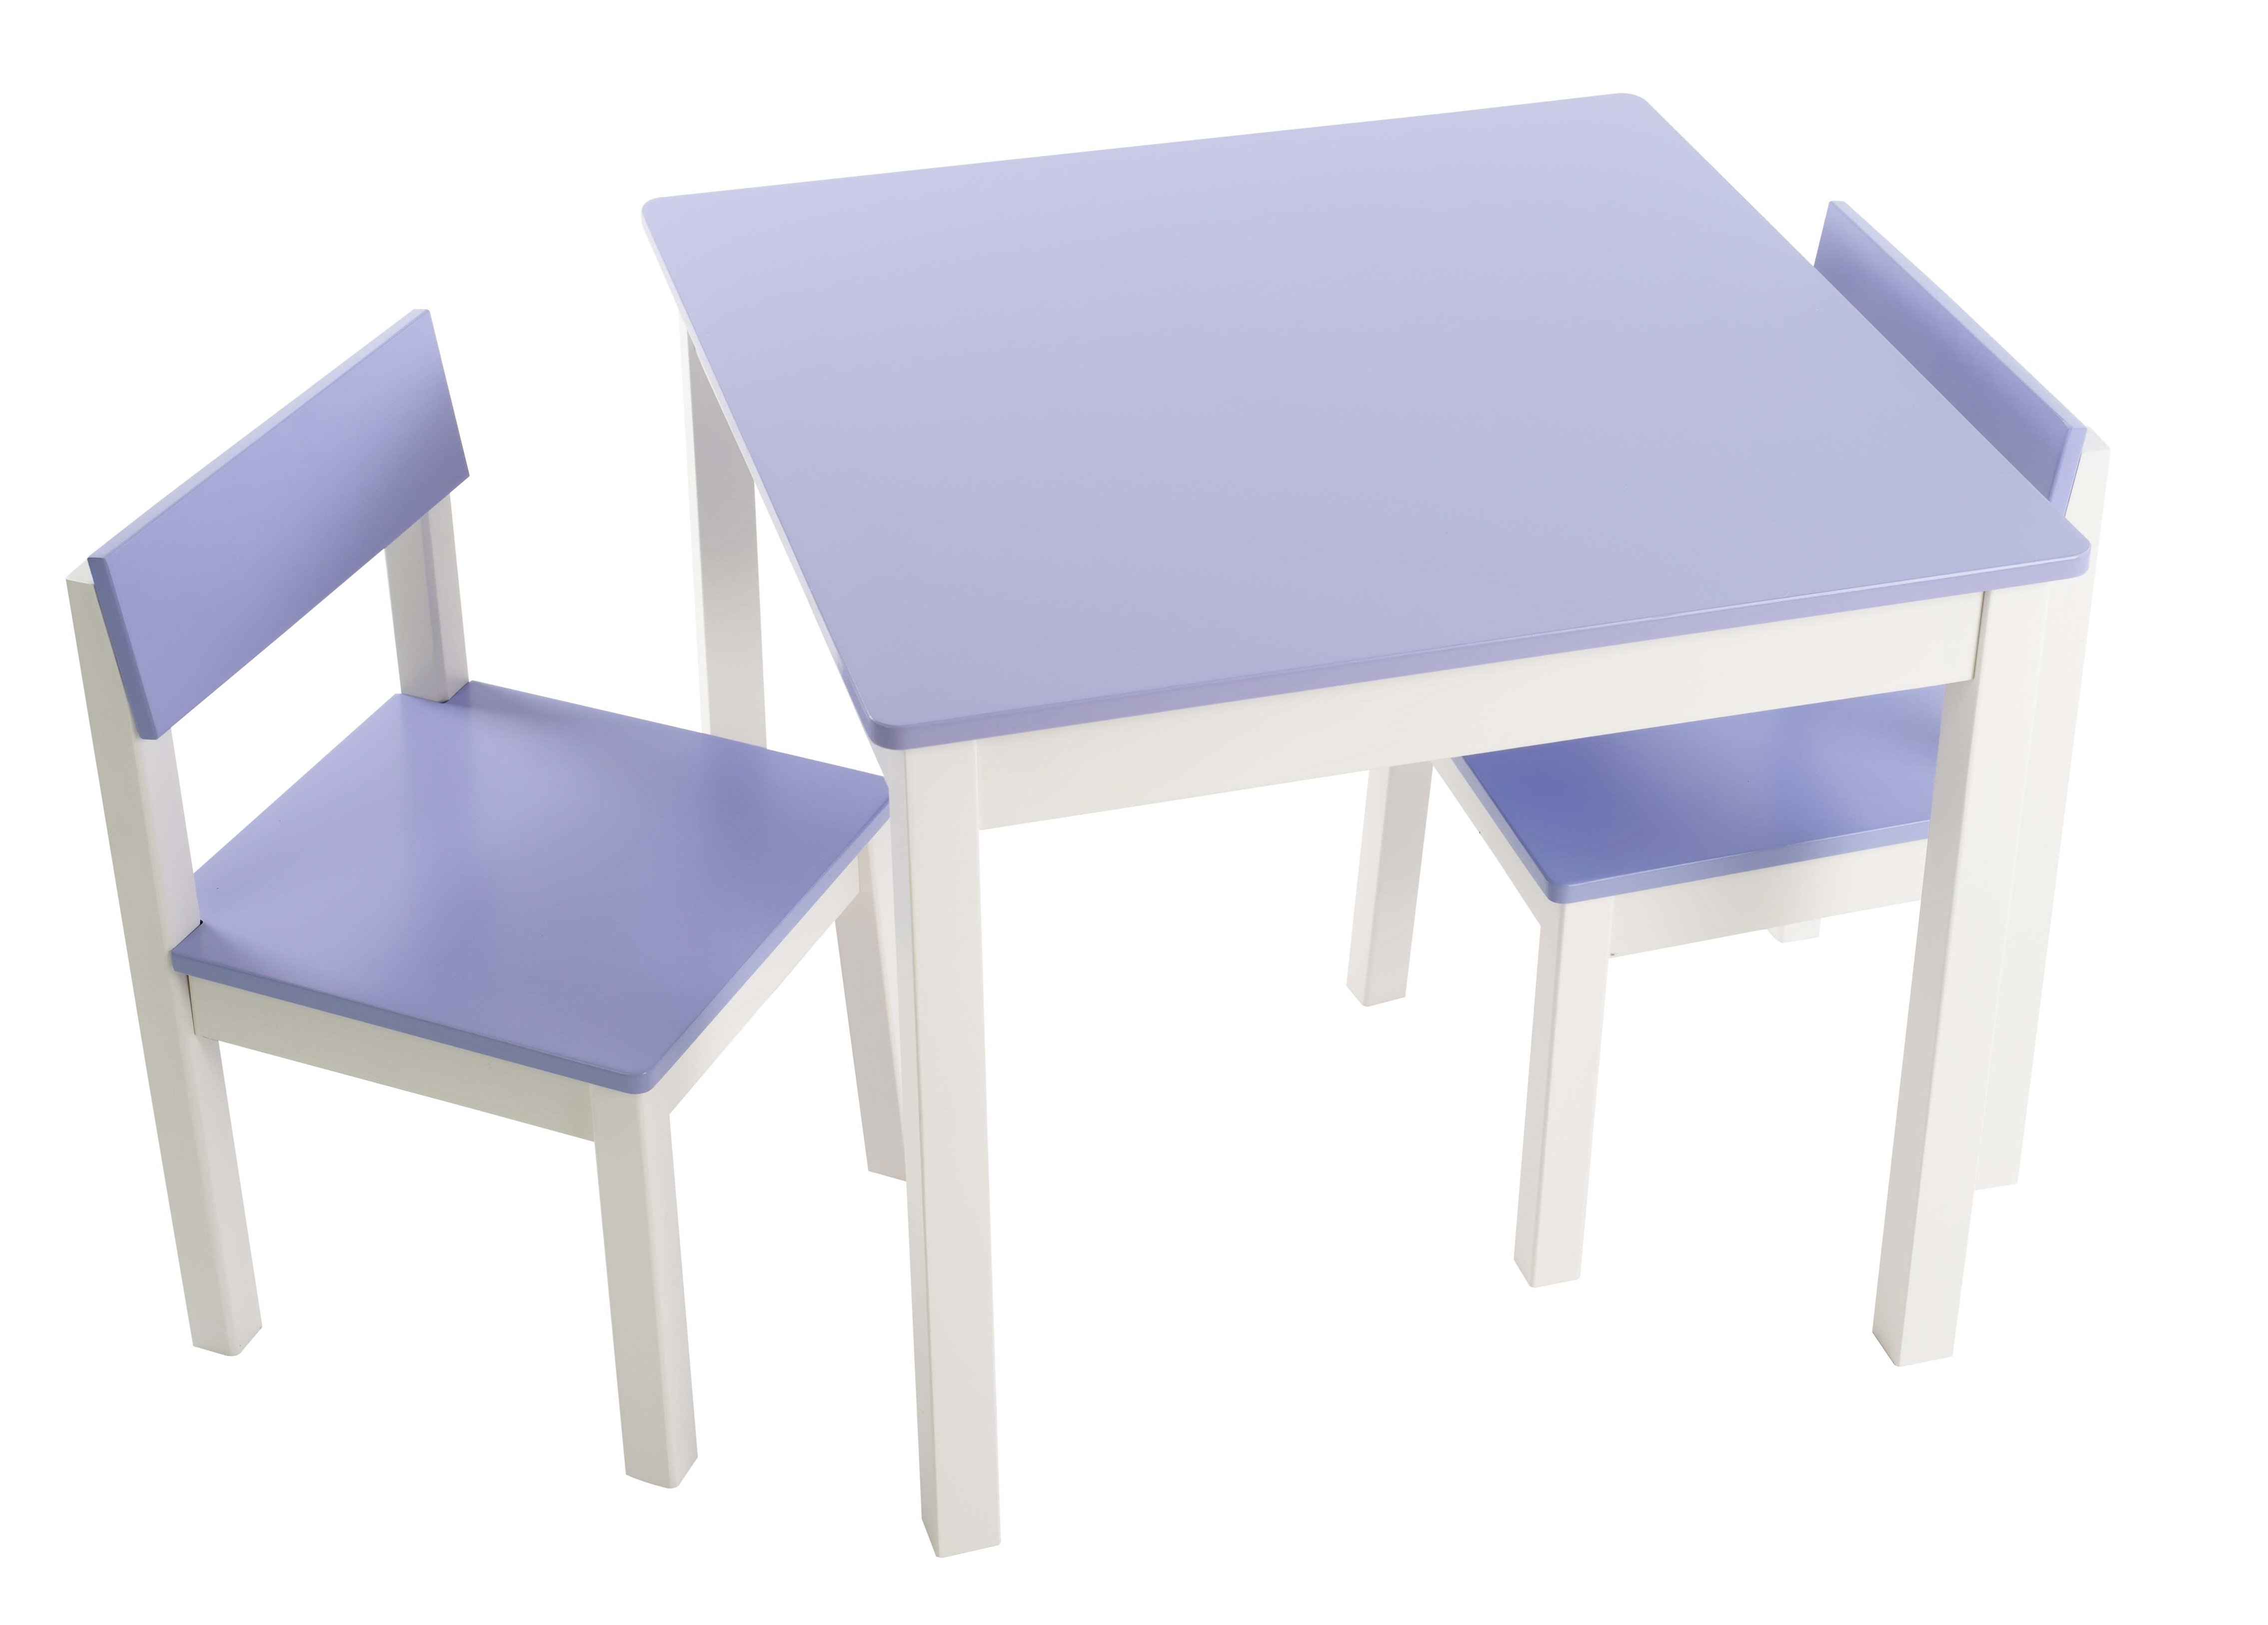 שולחן וכסאות לילדים - דגם חלק – צבע לילך -  קוקולה.   6 צבעים לבחירה: שמנת, לבן, ורוד, לילך, פיסטוק, תכלת. מחיר הסט כולל שולחן ושני כסאות. ניתן להוסיף פלטת פרספקס להגנה על פלטת השולחן בעלות של 69 ש